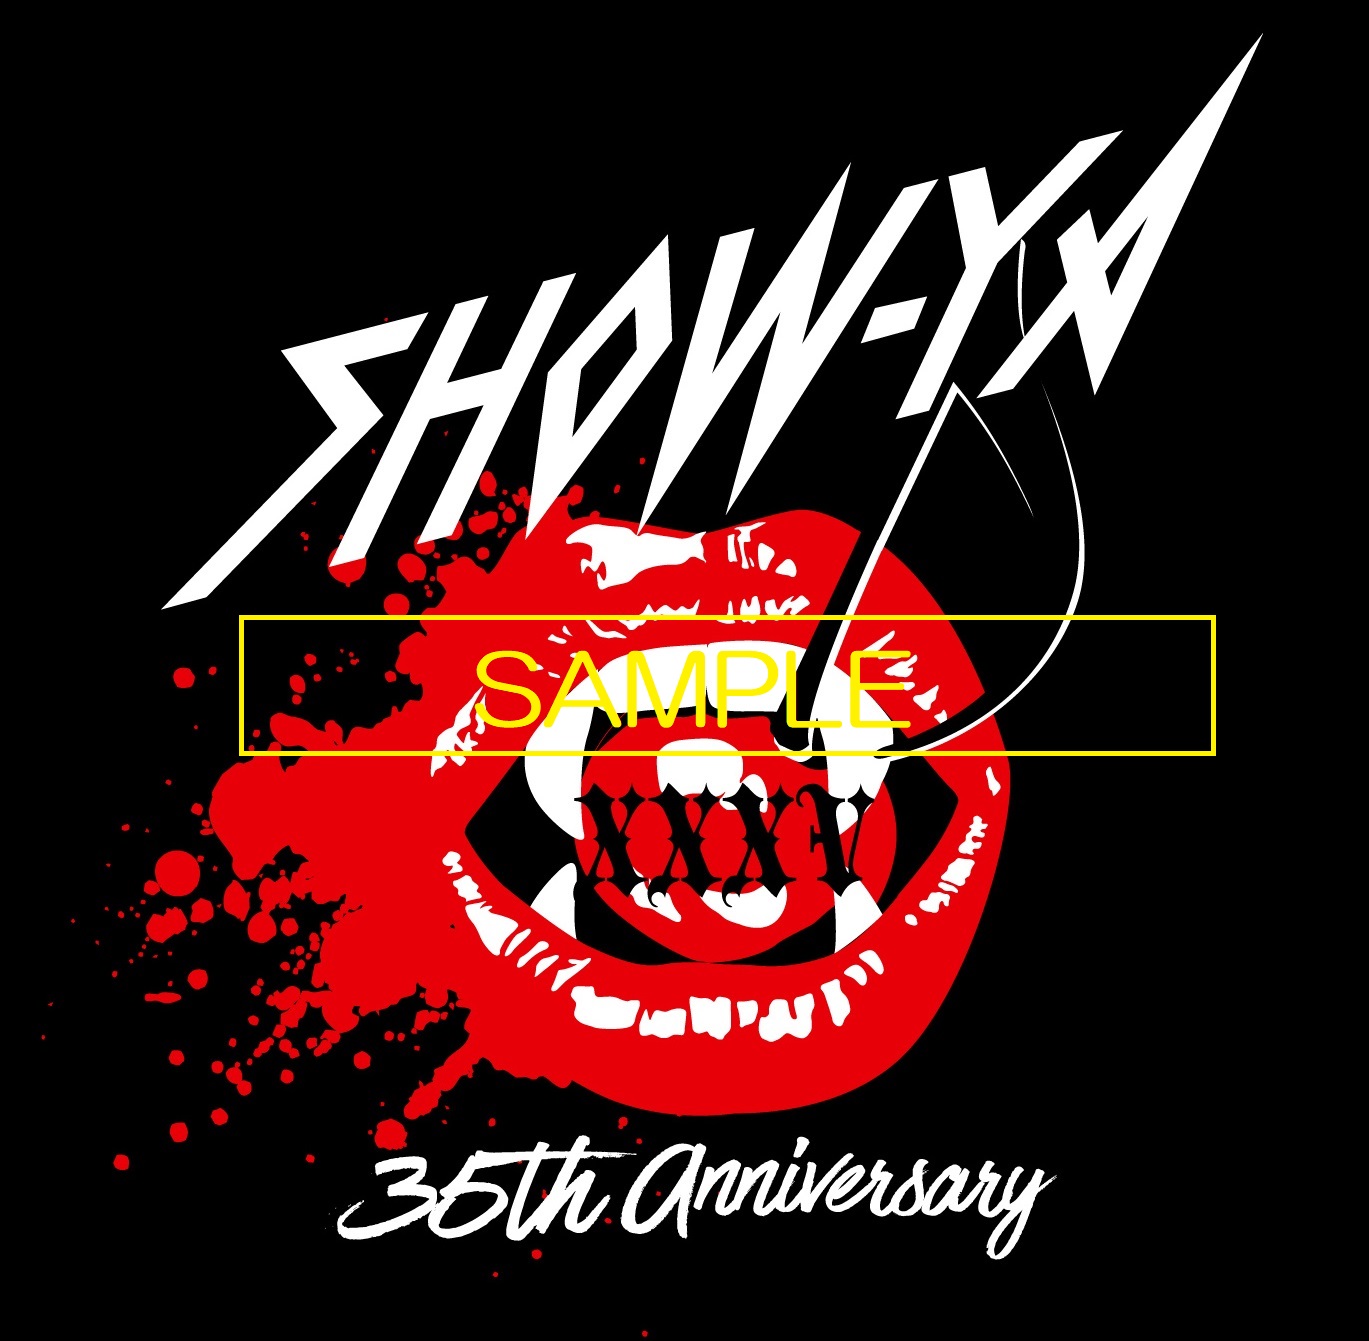 期間限定特価 激レアSHOW-YA ショーヤ 35th anniversary Tシャツ